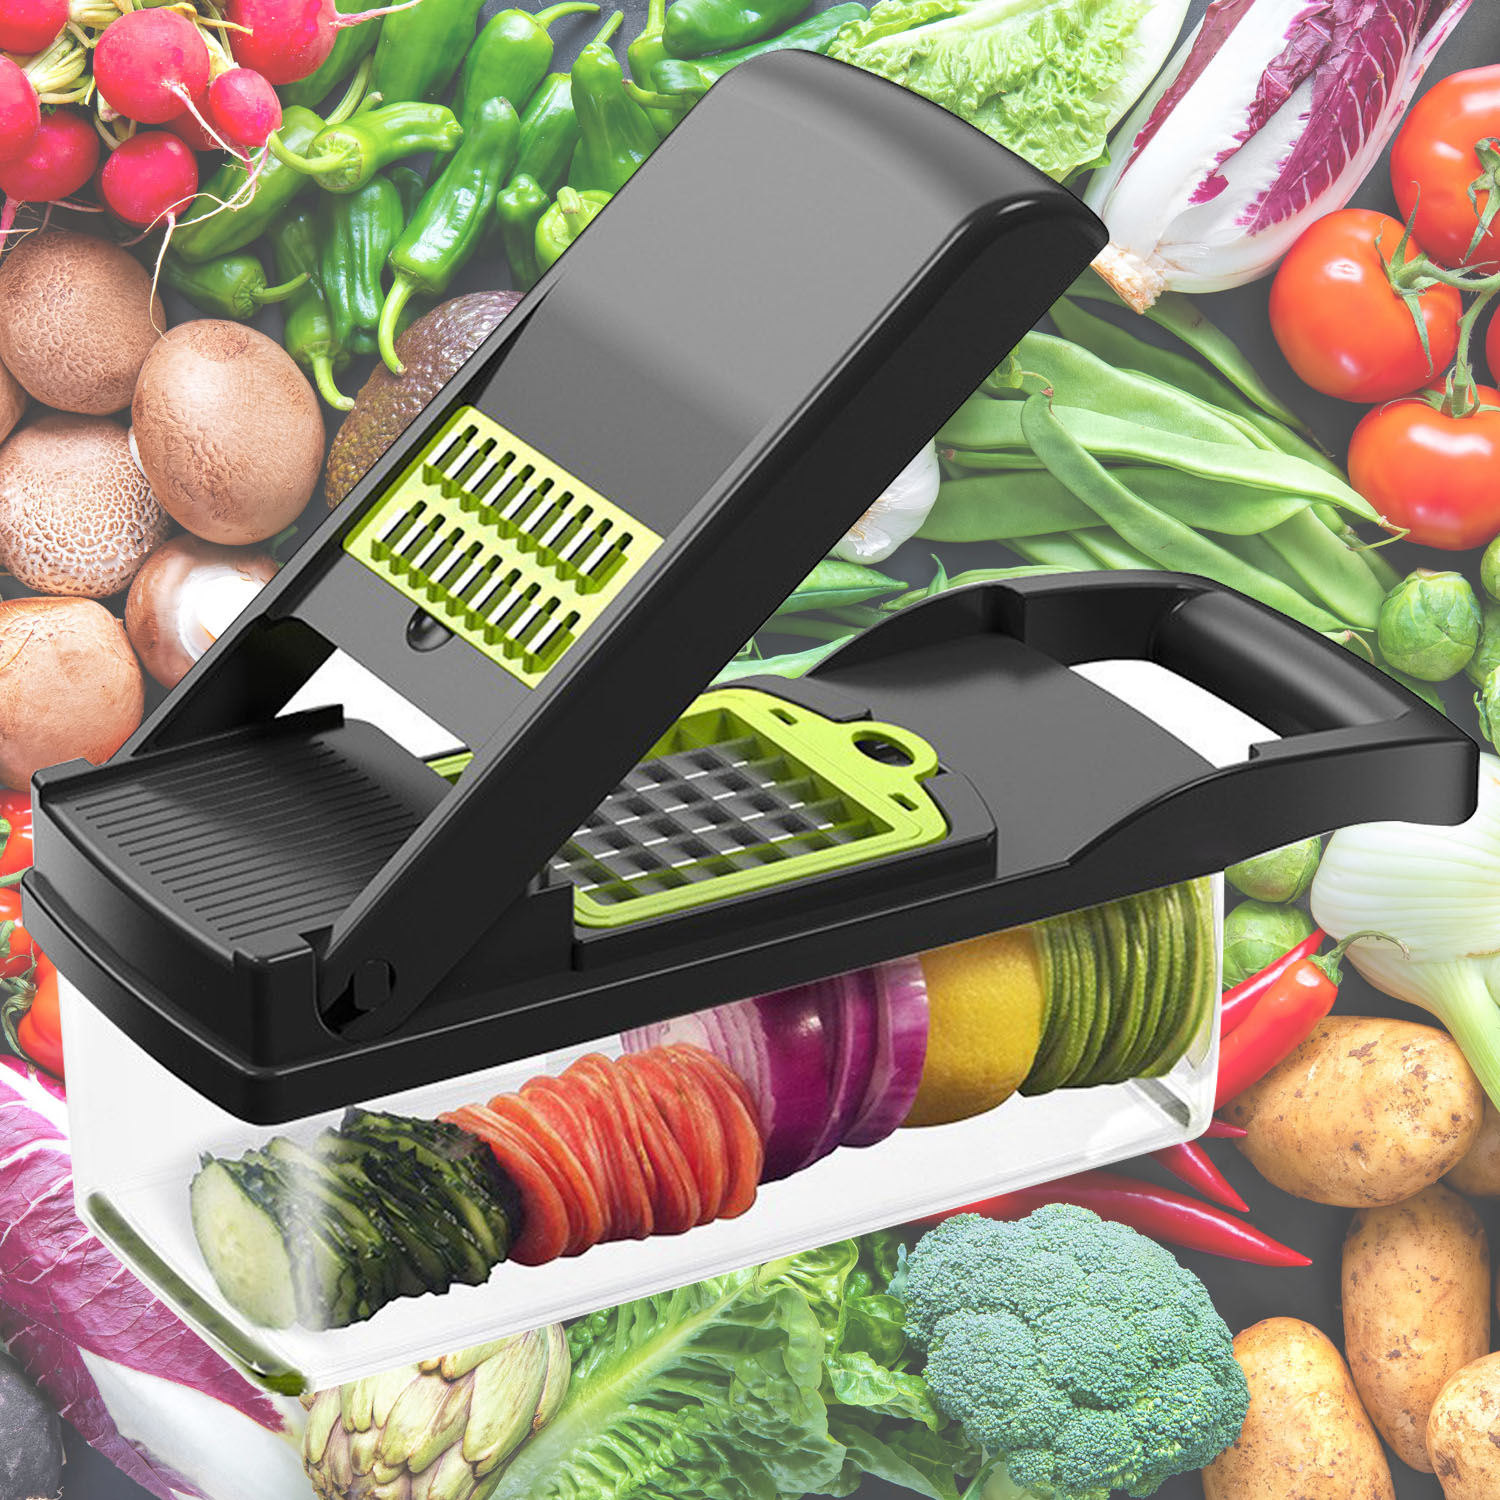  Picadora de alimentos multifuncional 13 en 1 con 8 cuchillas Cortadora de verduras con contenedor Cortadora de verduras ajustable Vegetal, Picadora de cebolla